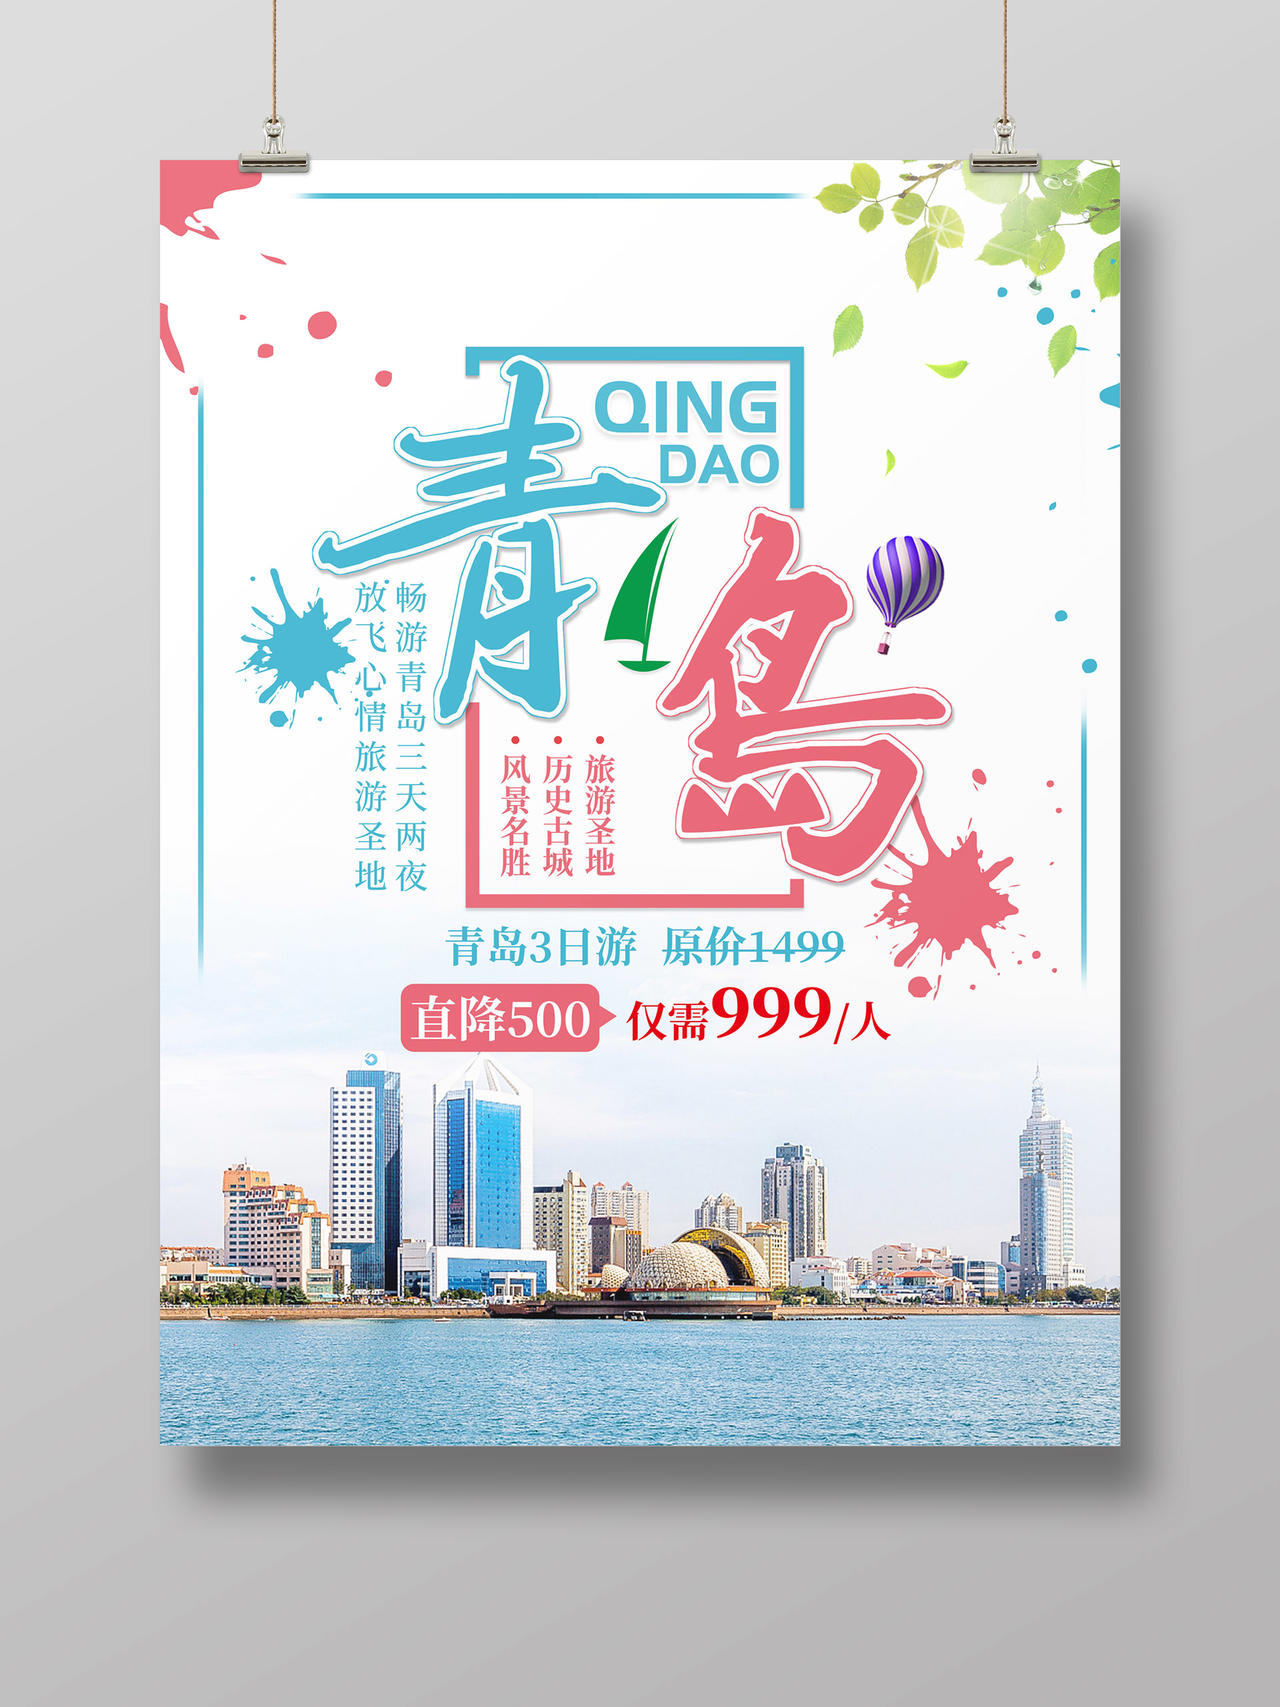 创意设计青岛旅游宣传海报